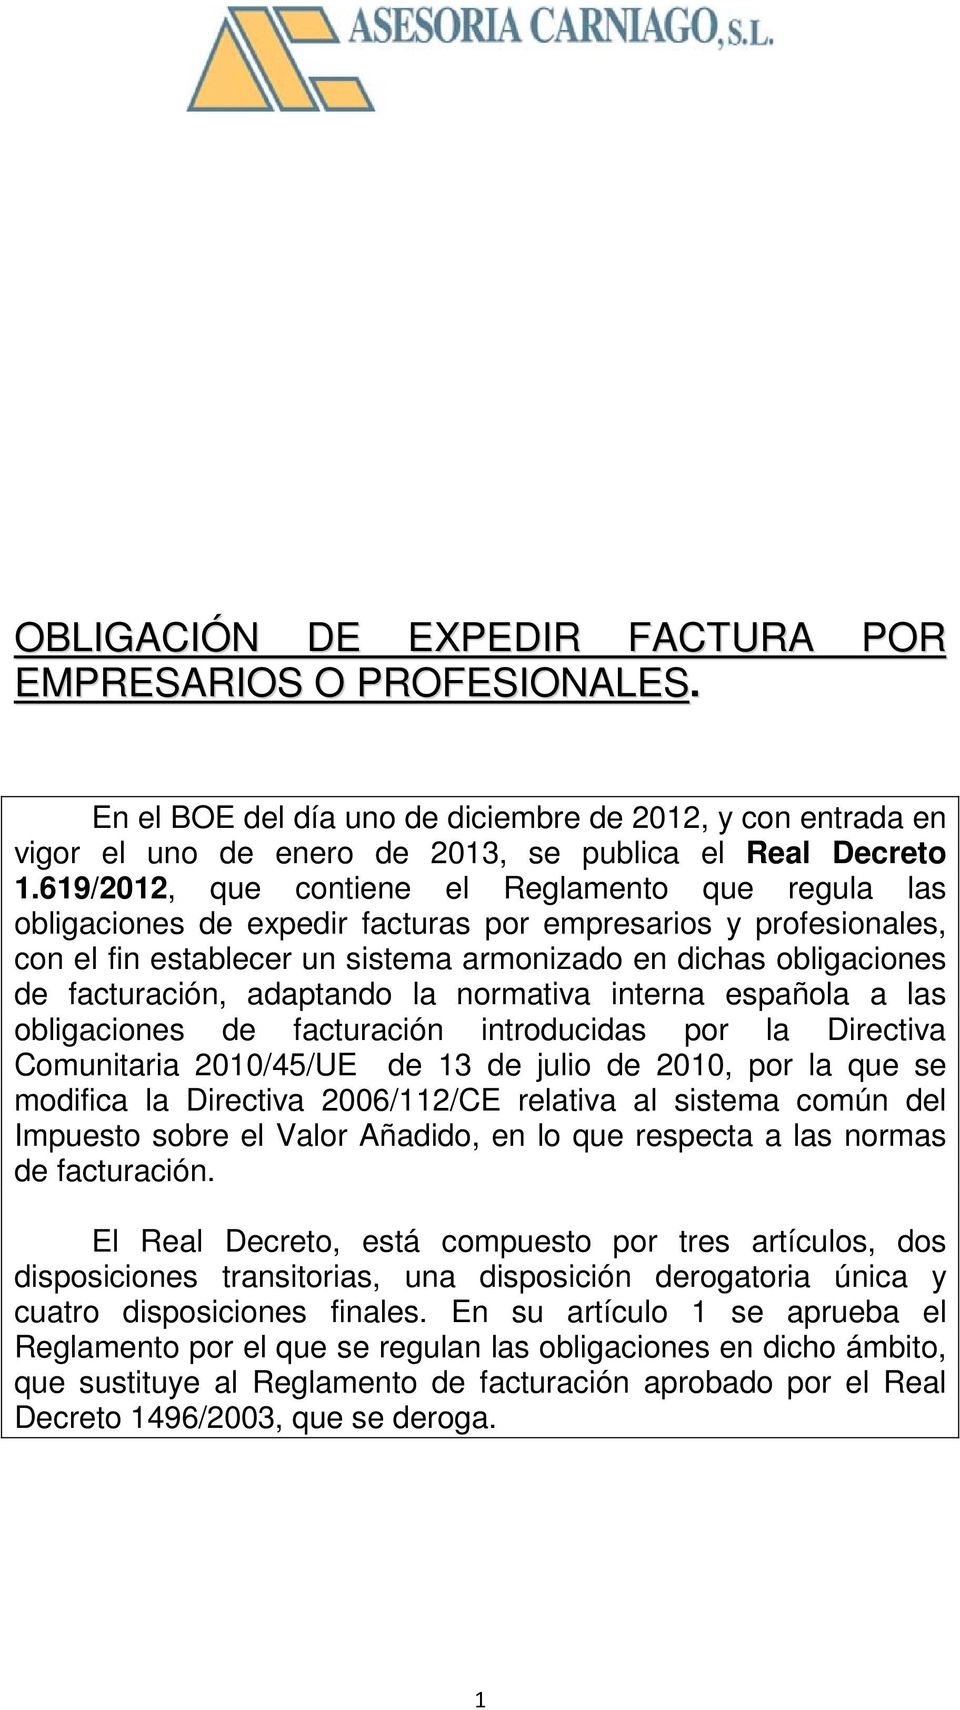 facturación, adaptando la normativa interna española a las obligaciones de facturación introducidas por la Directiva Comunitaria 2010/45/UE de 13 de julio de 2010, por la que se modifica la Directiva